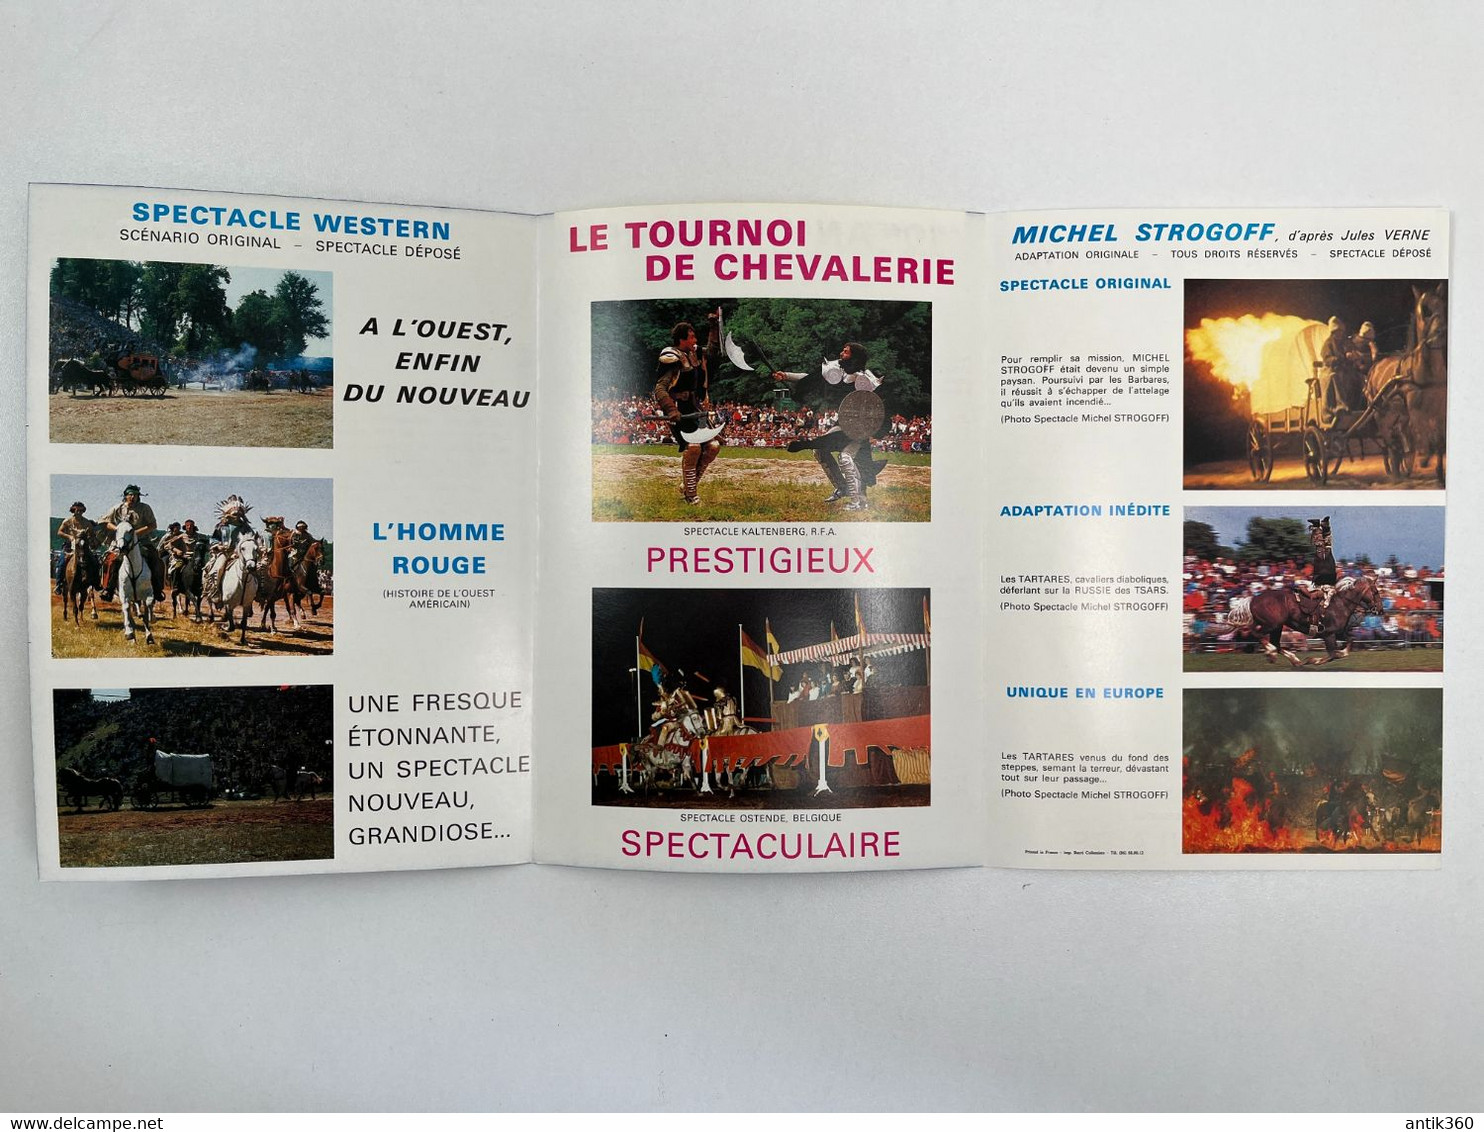 Cirque - Brochure Spectacle Les Cascadeurs Associés Jackie Vernon Arènes De Lutèce Paris - - Programma's